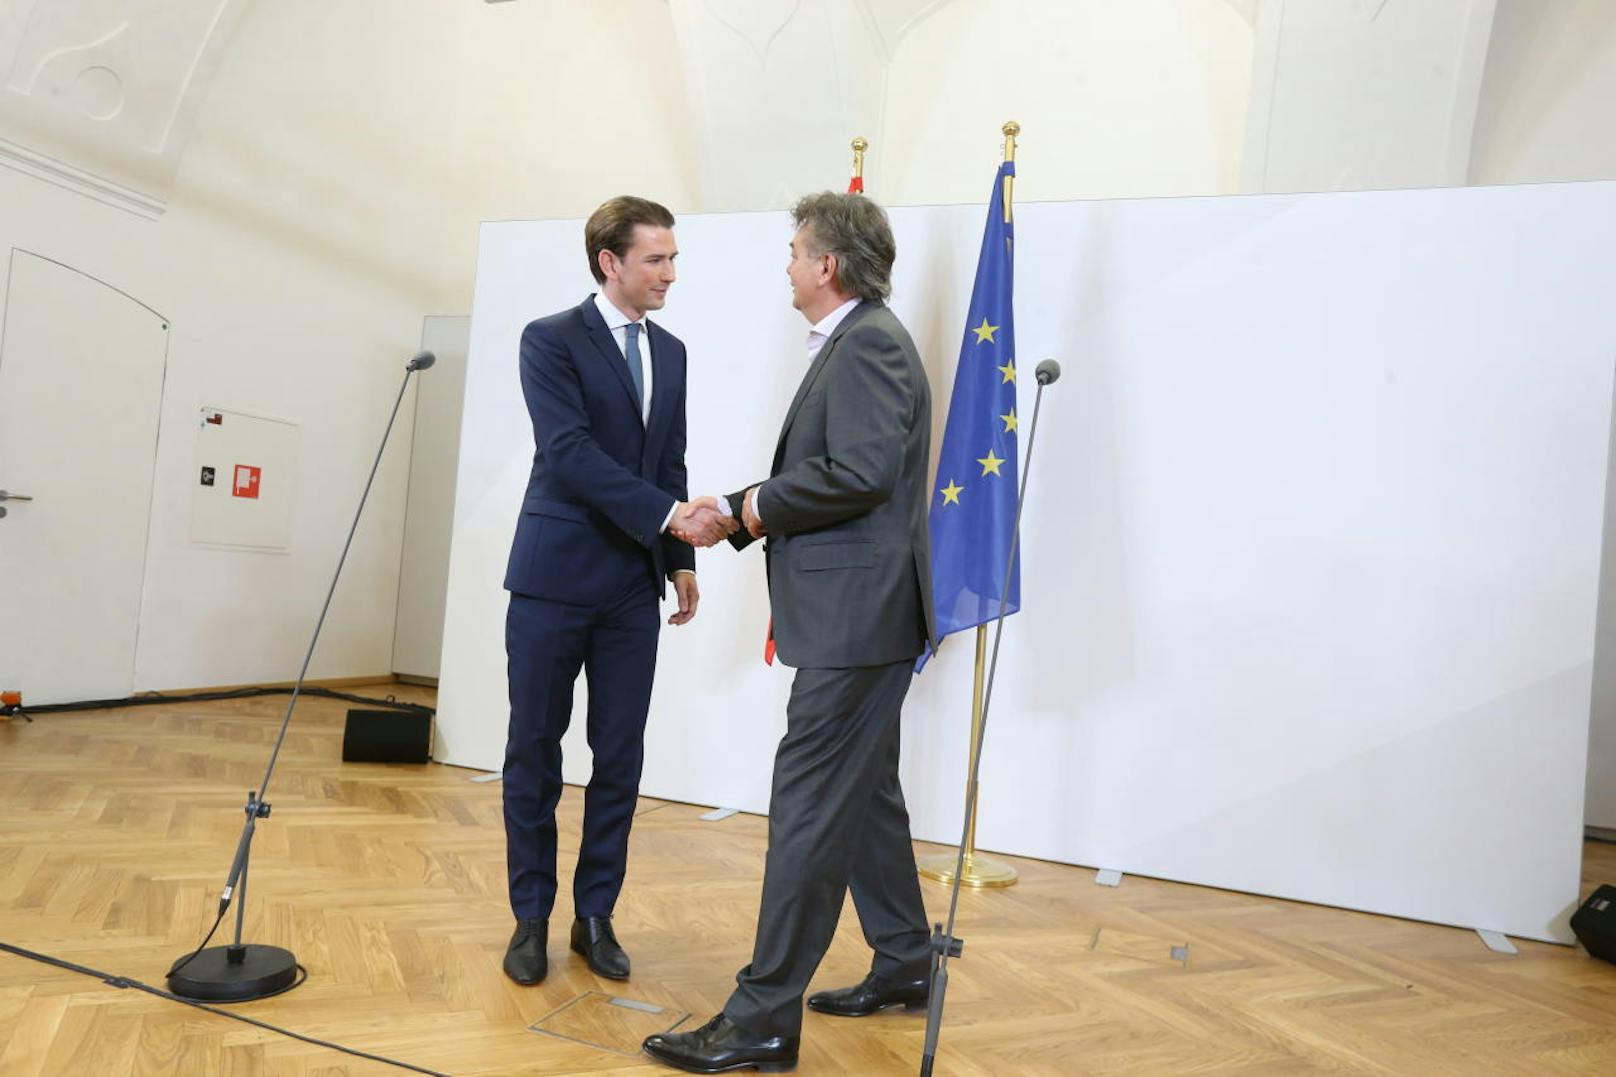 Das neue Spitzenduo der österreichischen Innenpolitik. Handshake zwischen dem designierten Bundeskanzler und seinem Vize.